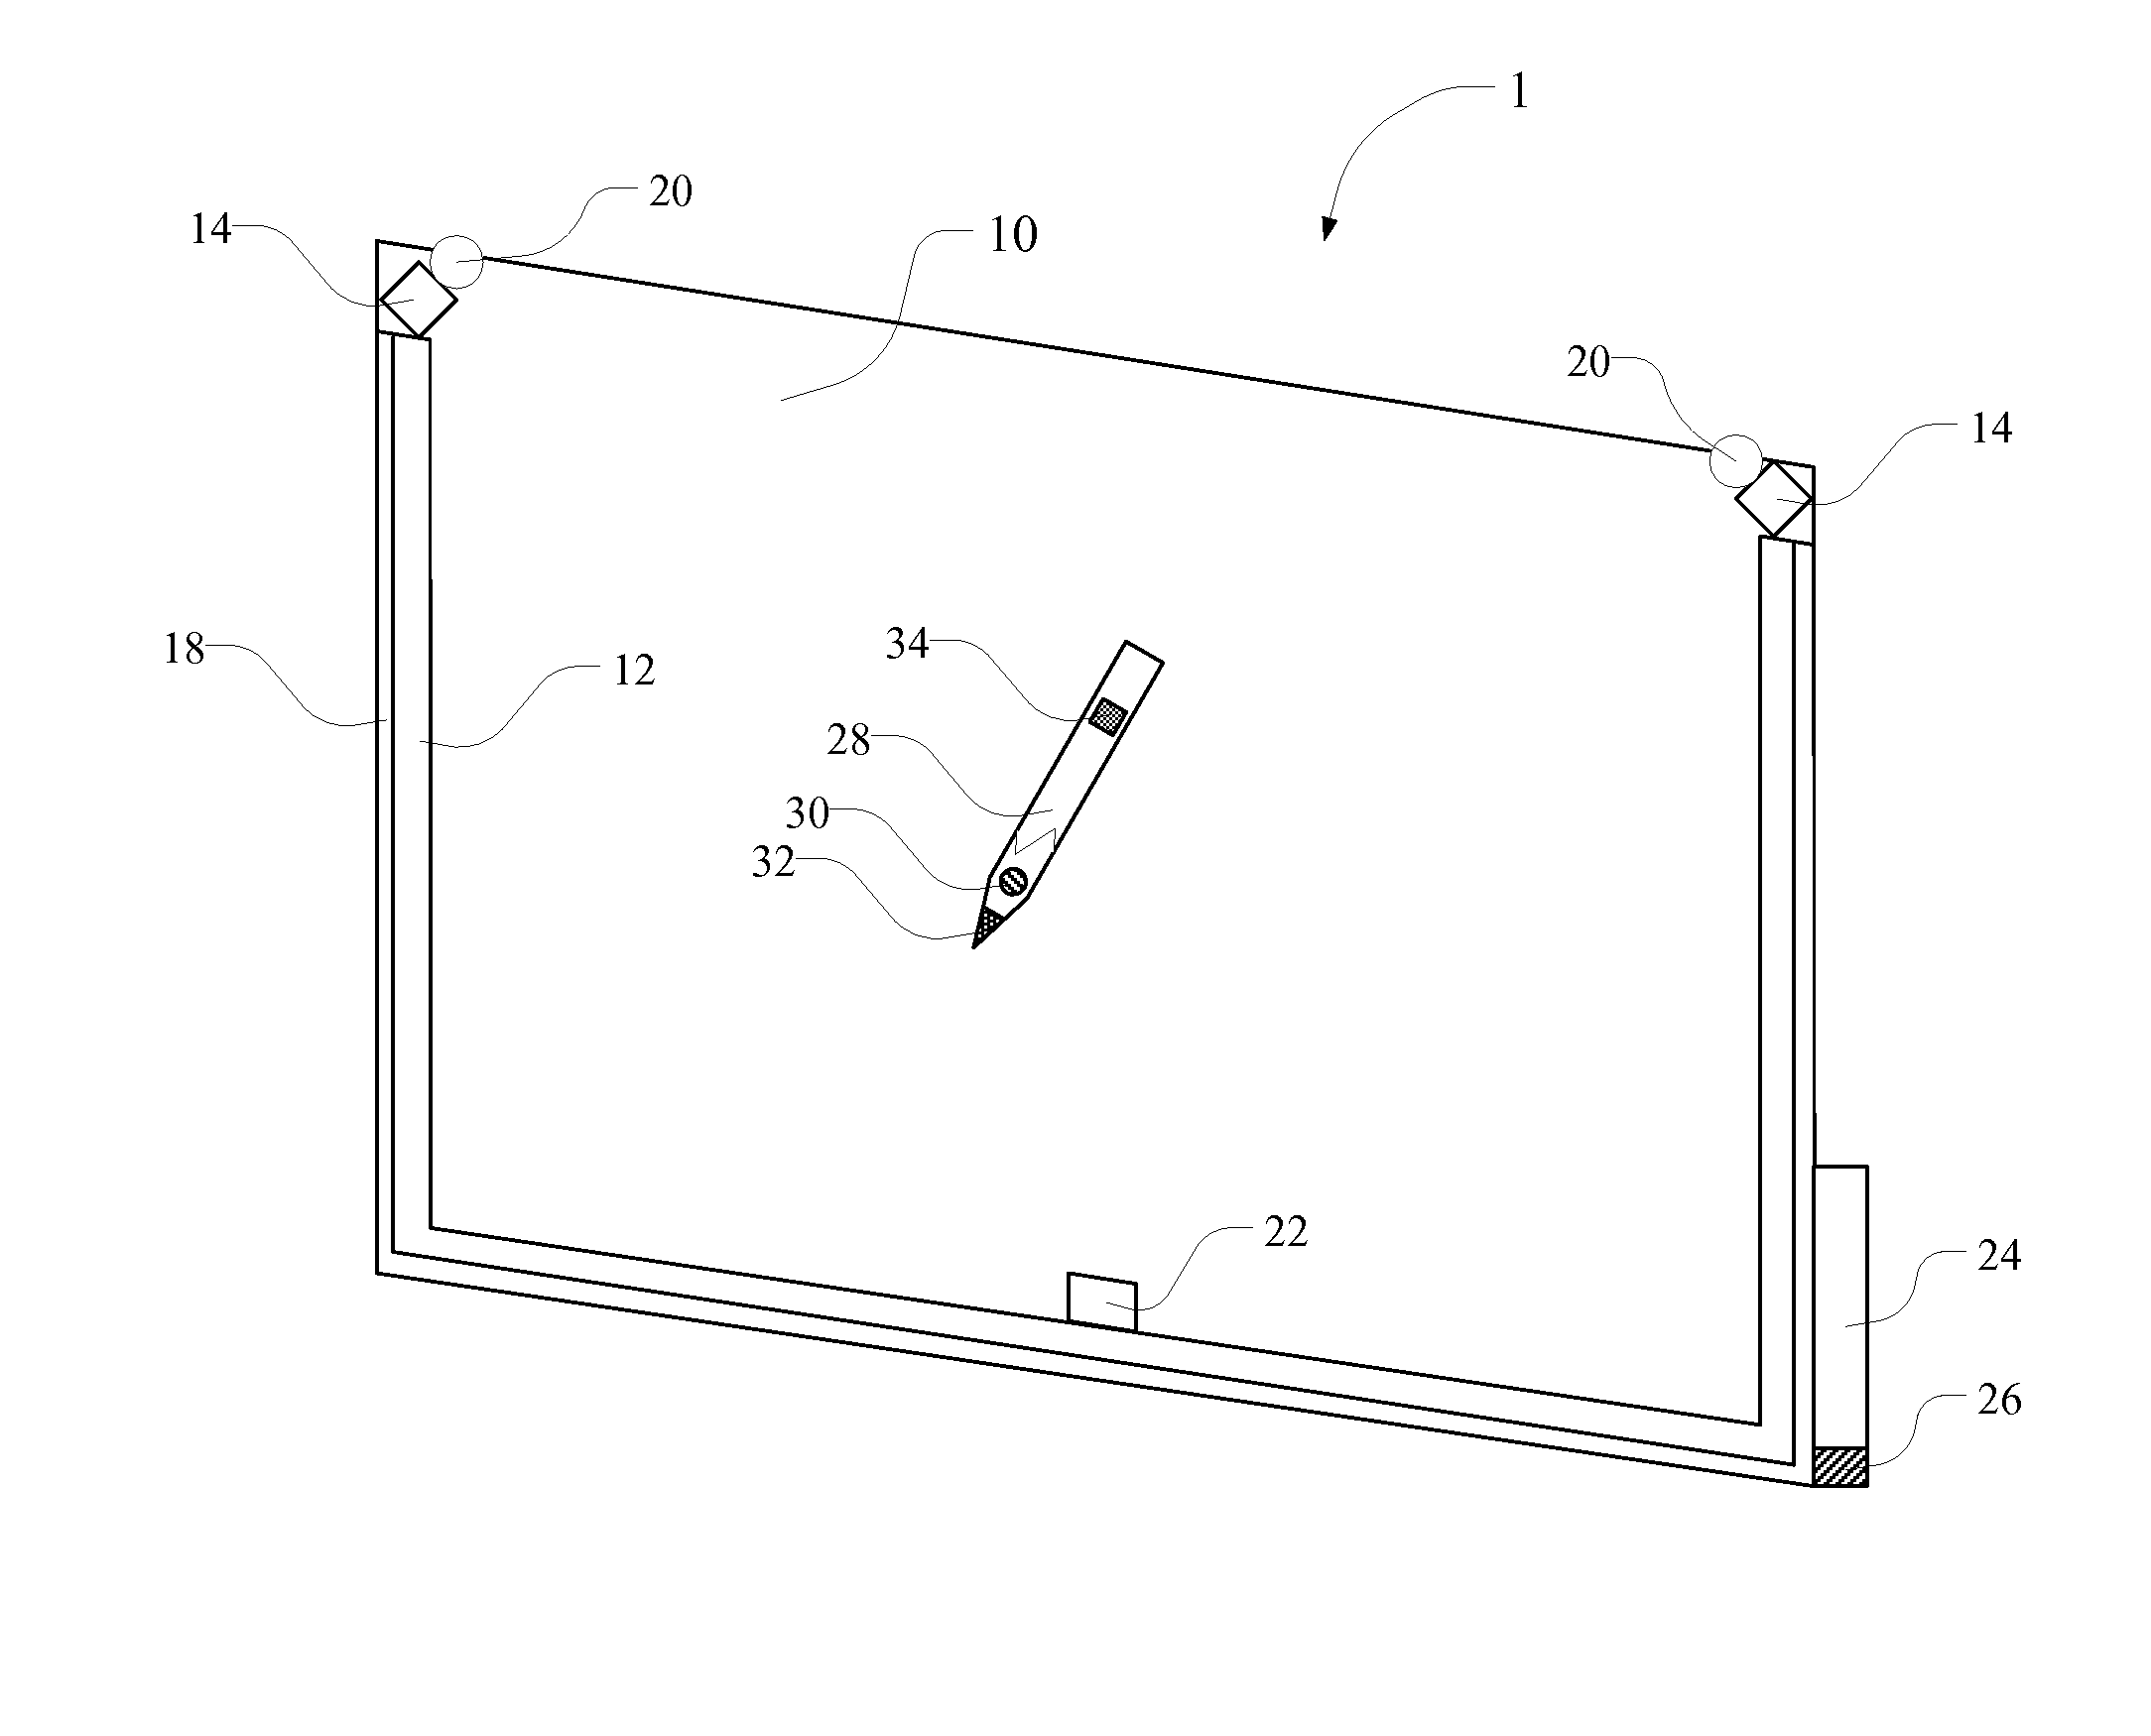 Optical Sensing Screen and Panel Sensing Method